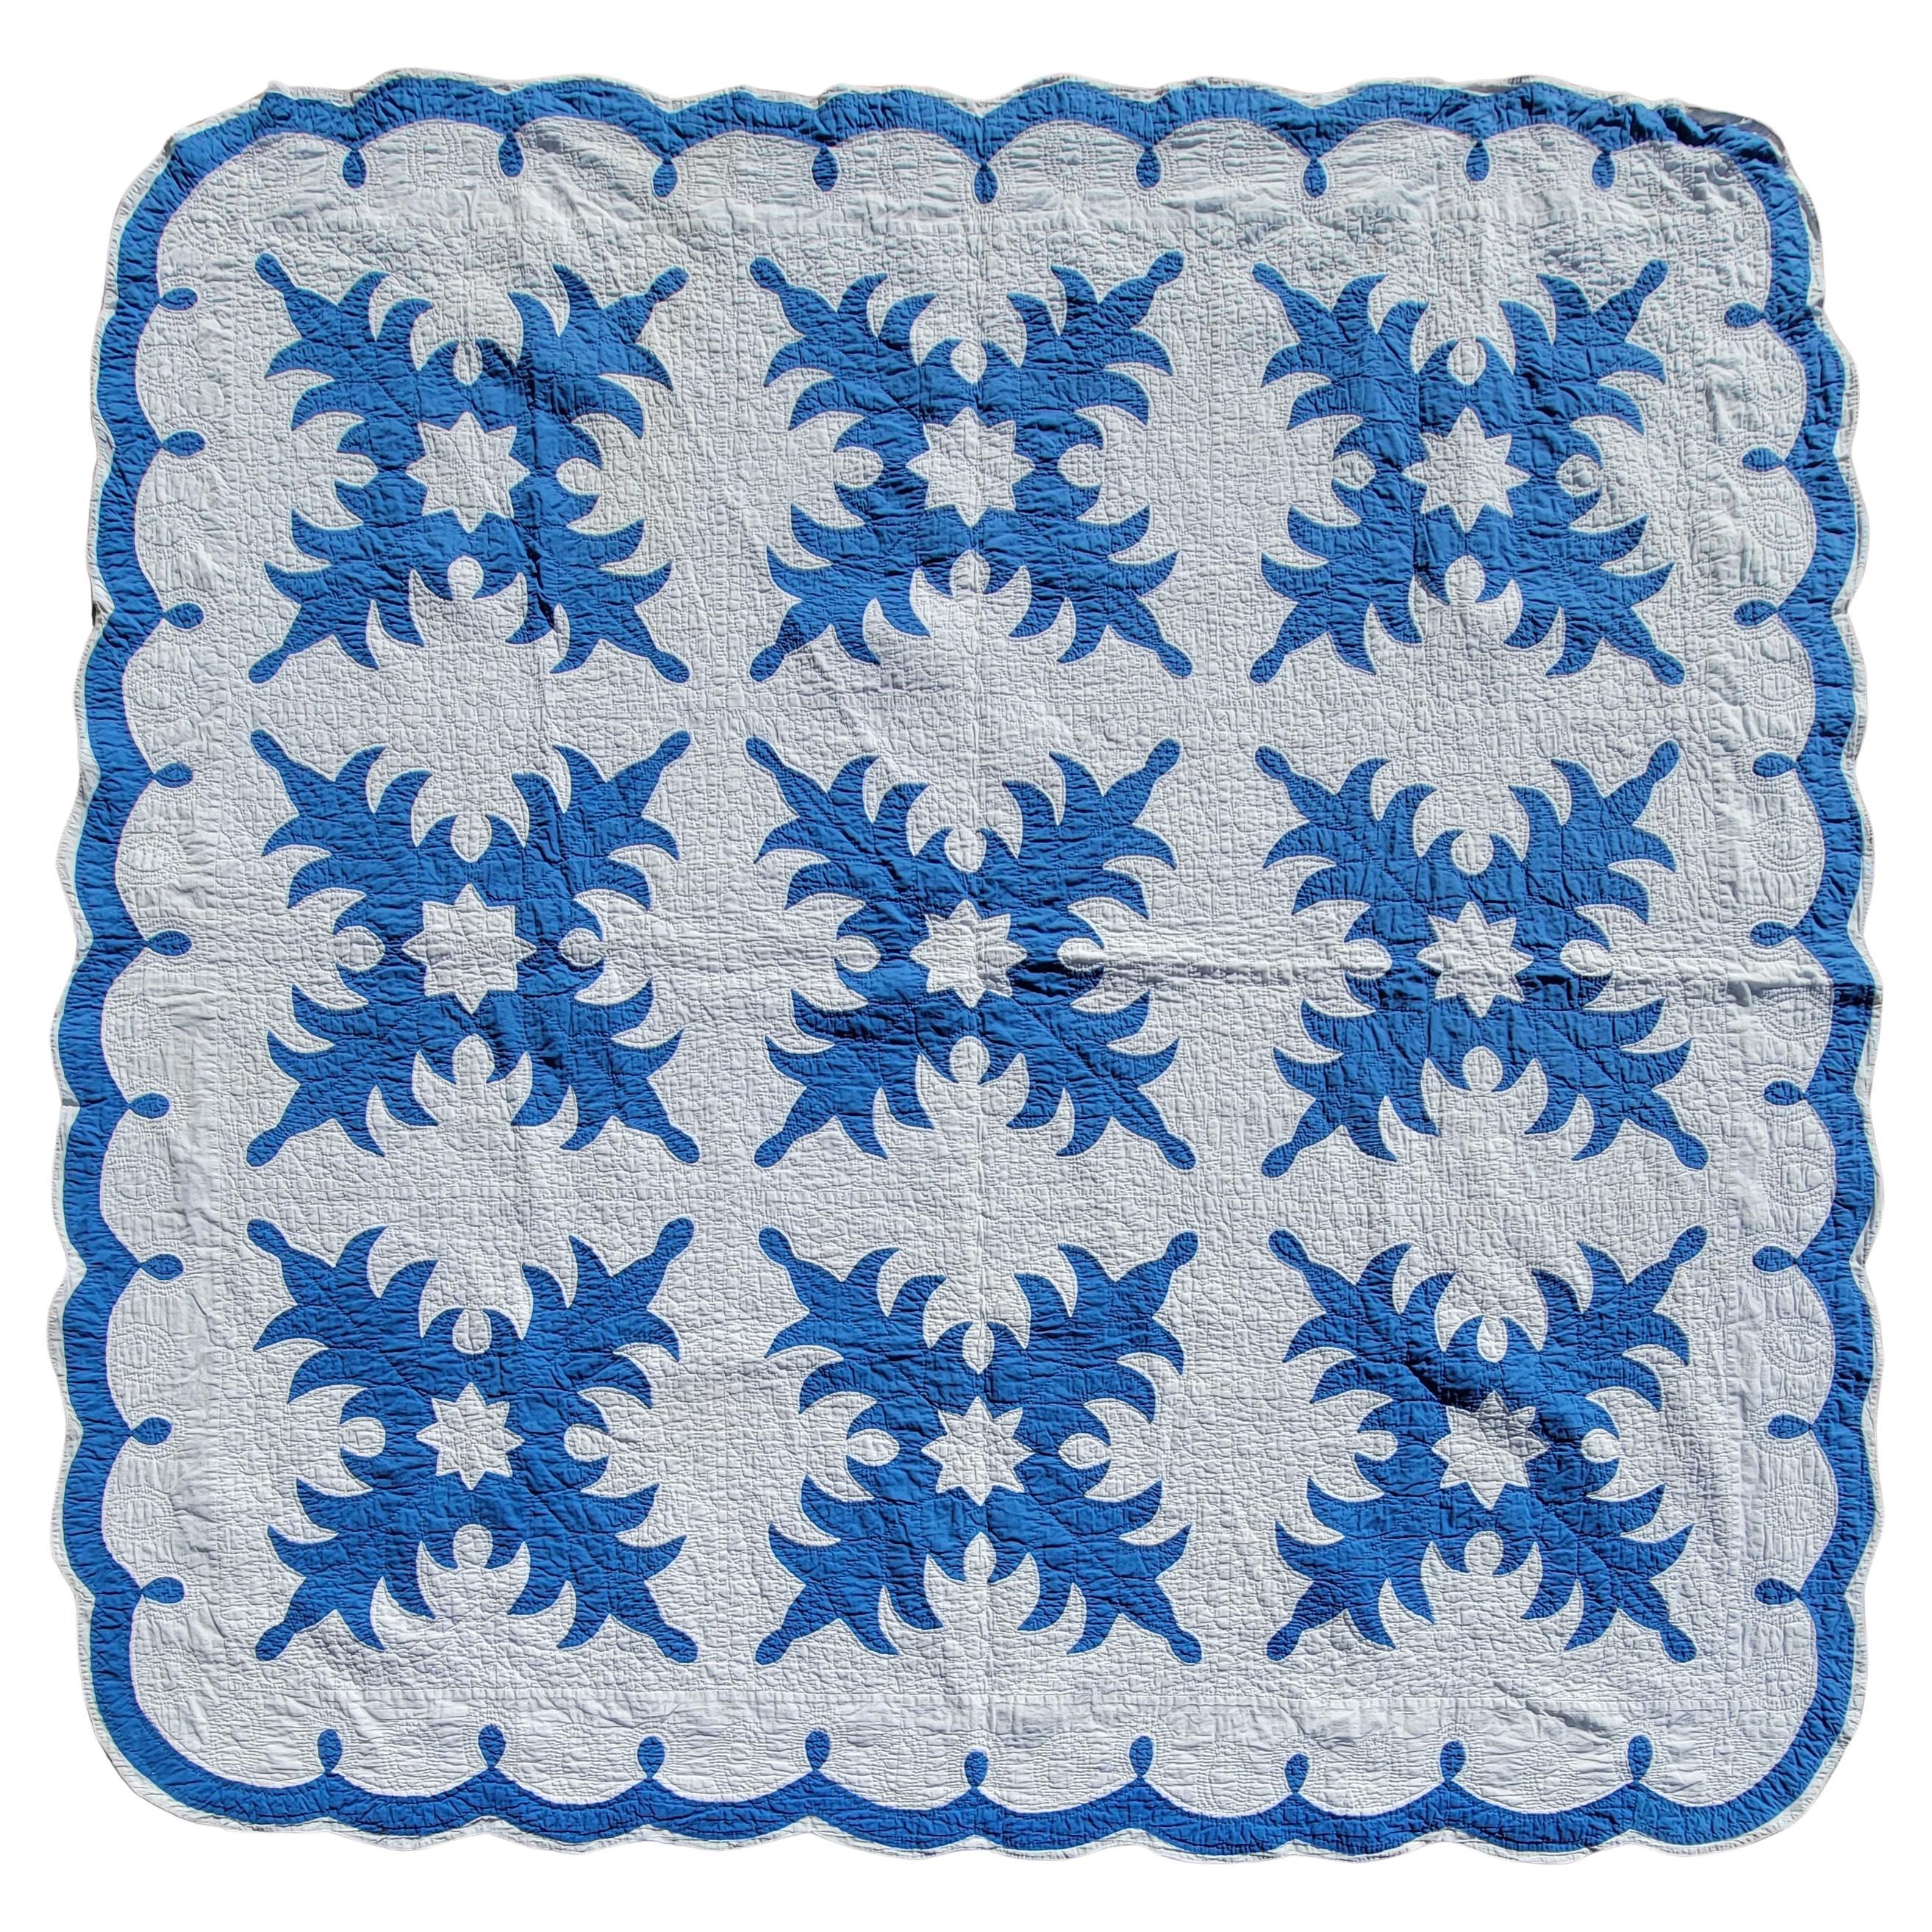 Frühe 20Thc Blau & Weiß Applique Schneeflocken Quilt